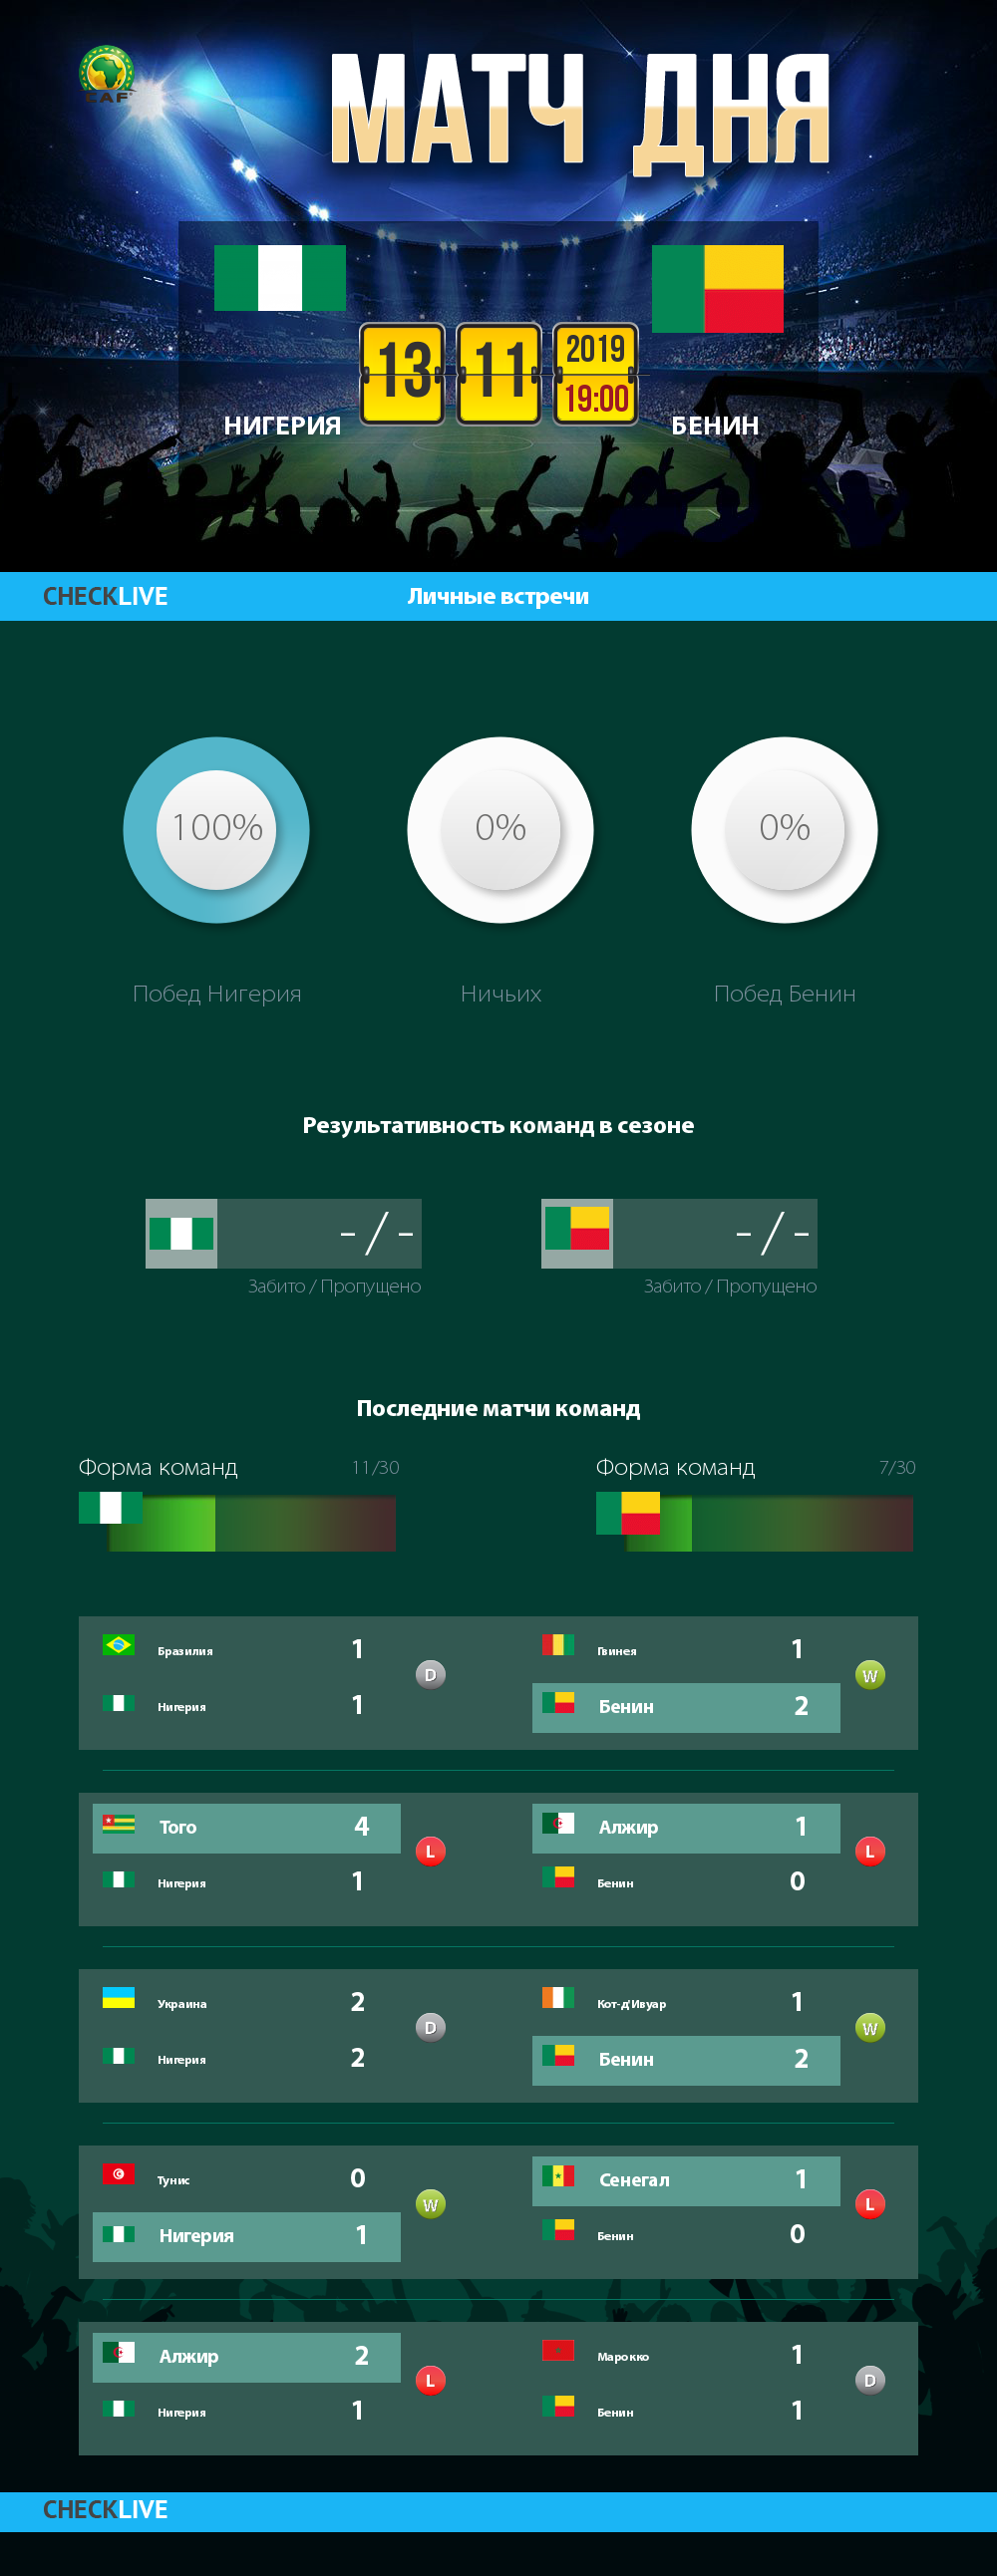 Инфографика Нигерия и Бенин матч дня 13.11.2019